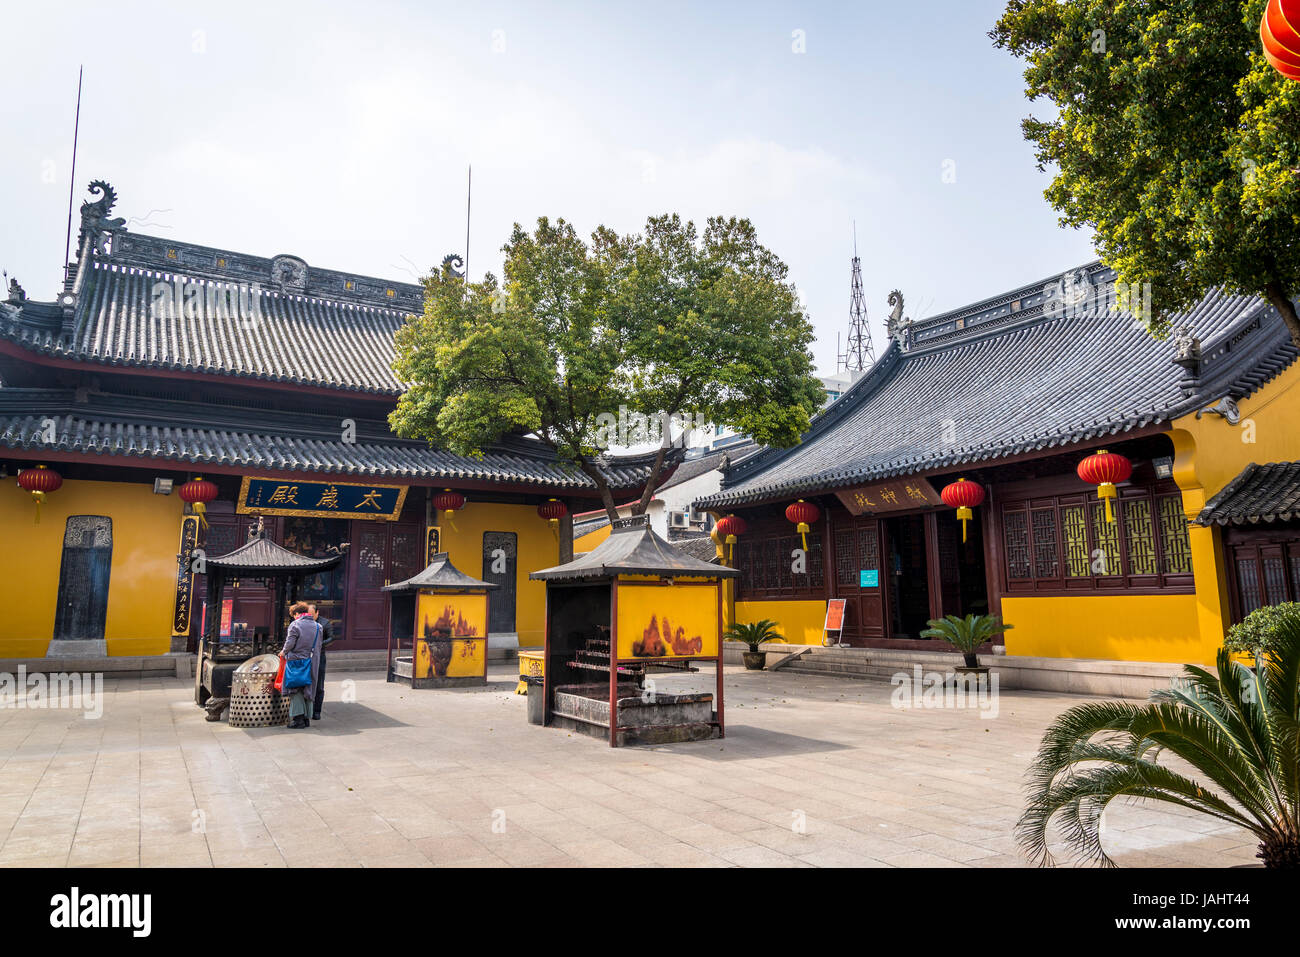 Tempio di mistero, un complesso taoista fondata nel Song Dynasty, Suzhou, provincia dello Jiangsu, Cina Foto Stock